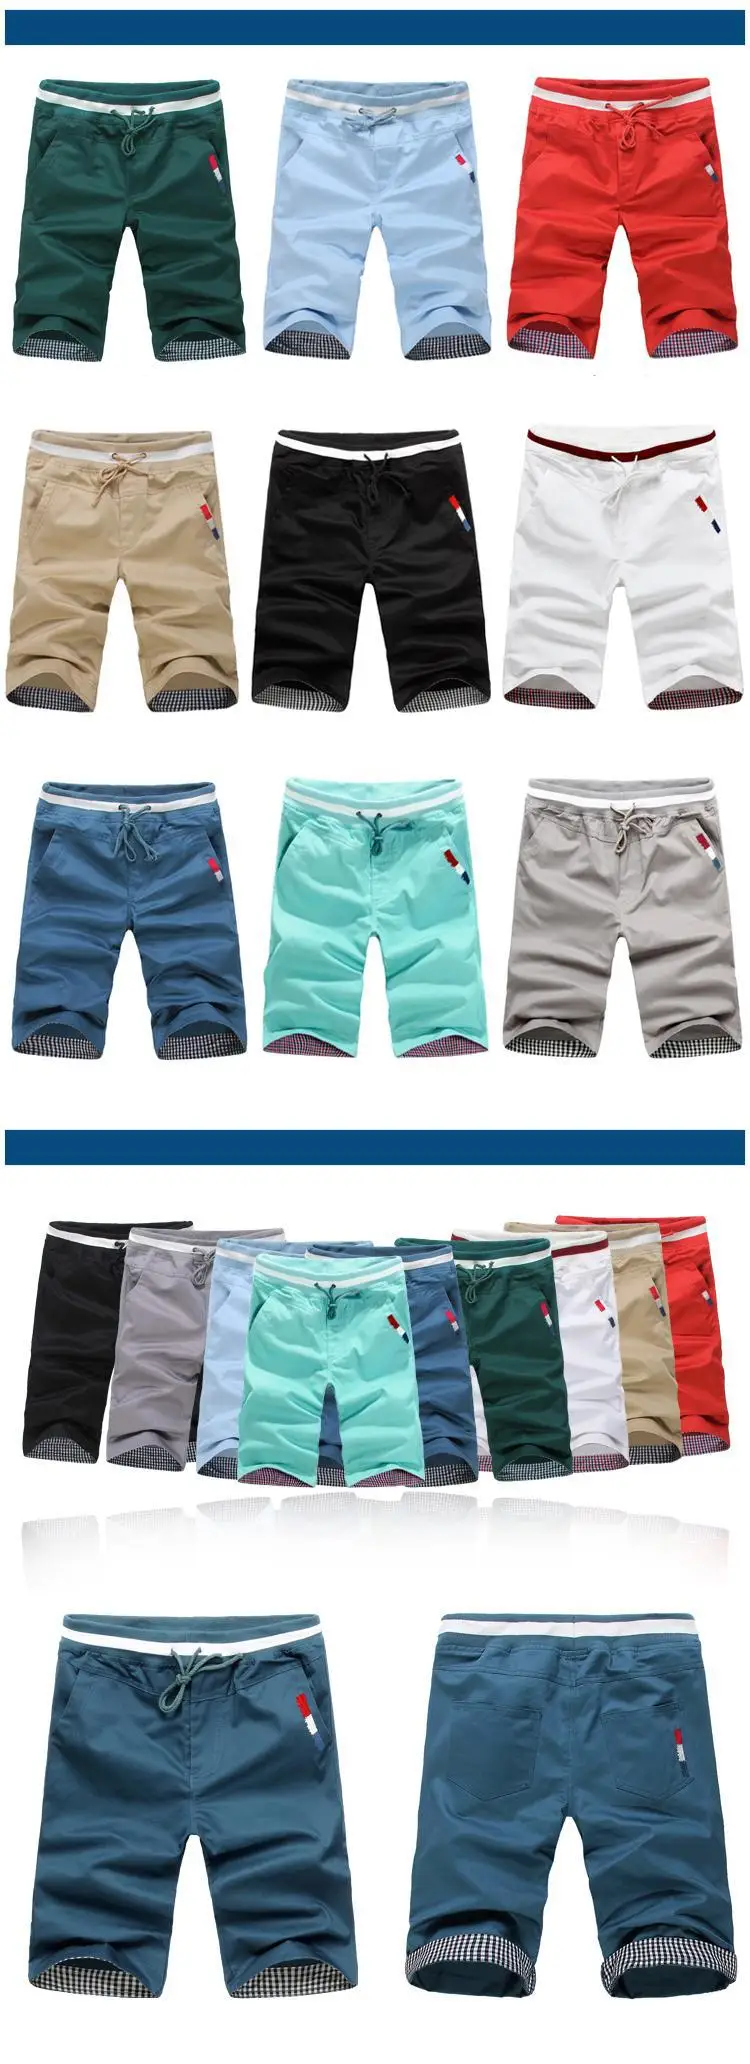 Лето Высокое качество пляжные шорты мужские модные однотонные 9 видов цветов большие размеры 5xl эластичная кулиска на талии Шорты/DK1